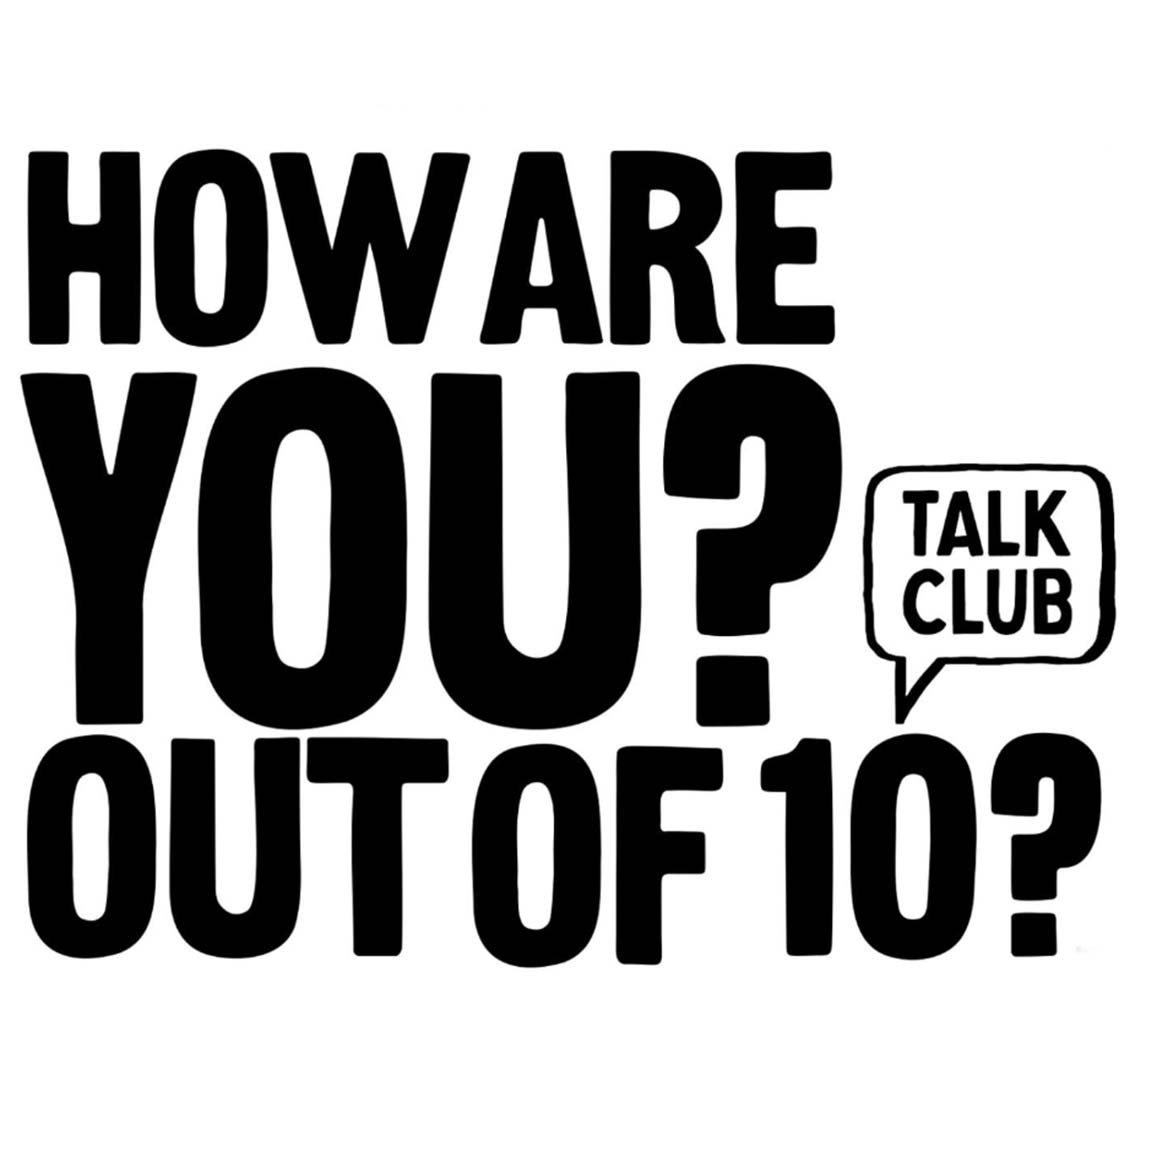 Talk-Club